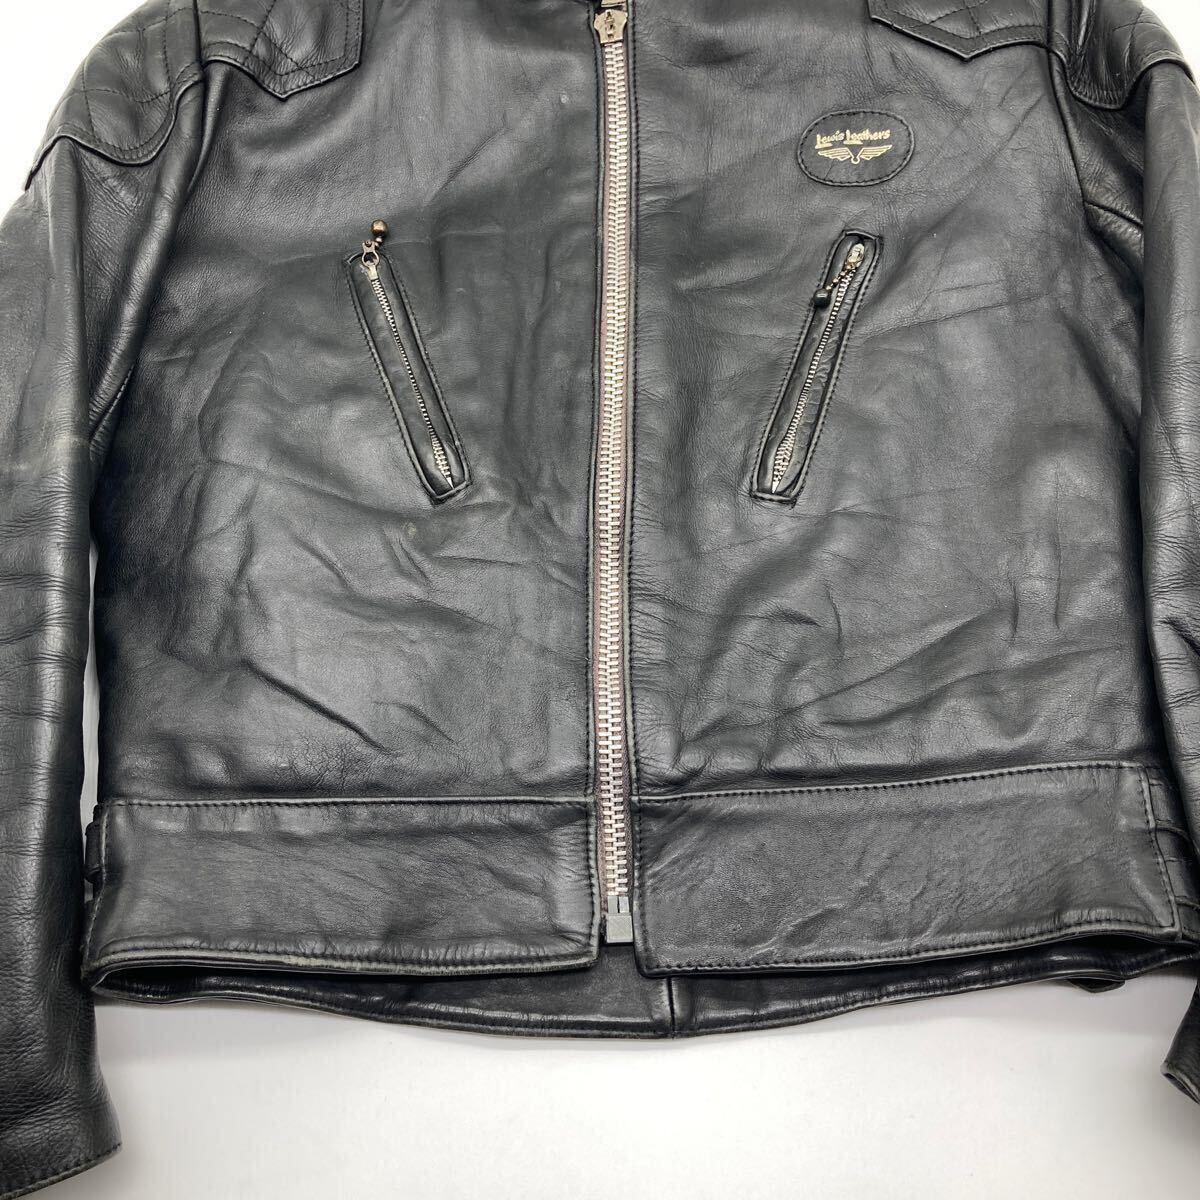  в настоящее время  вещь  Lewis leather ... стул  кожа  70s  супер   fan  ... ... пиджак   QUILTING   винтажный   REAL HIDE (38.40 состояние  )